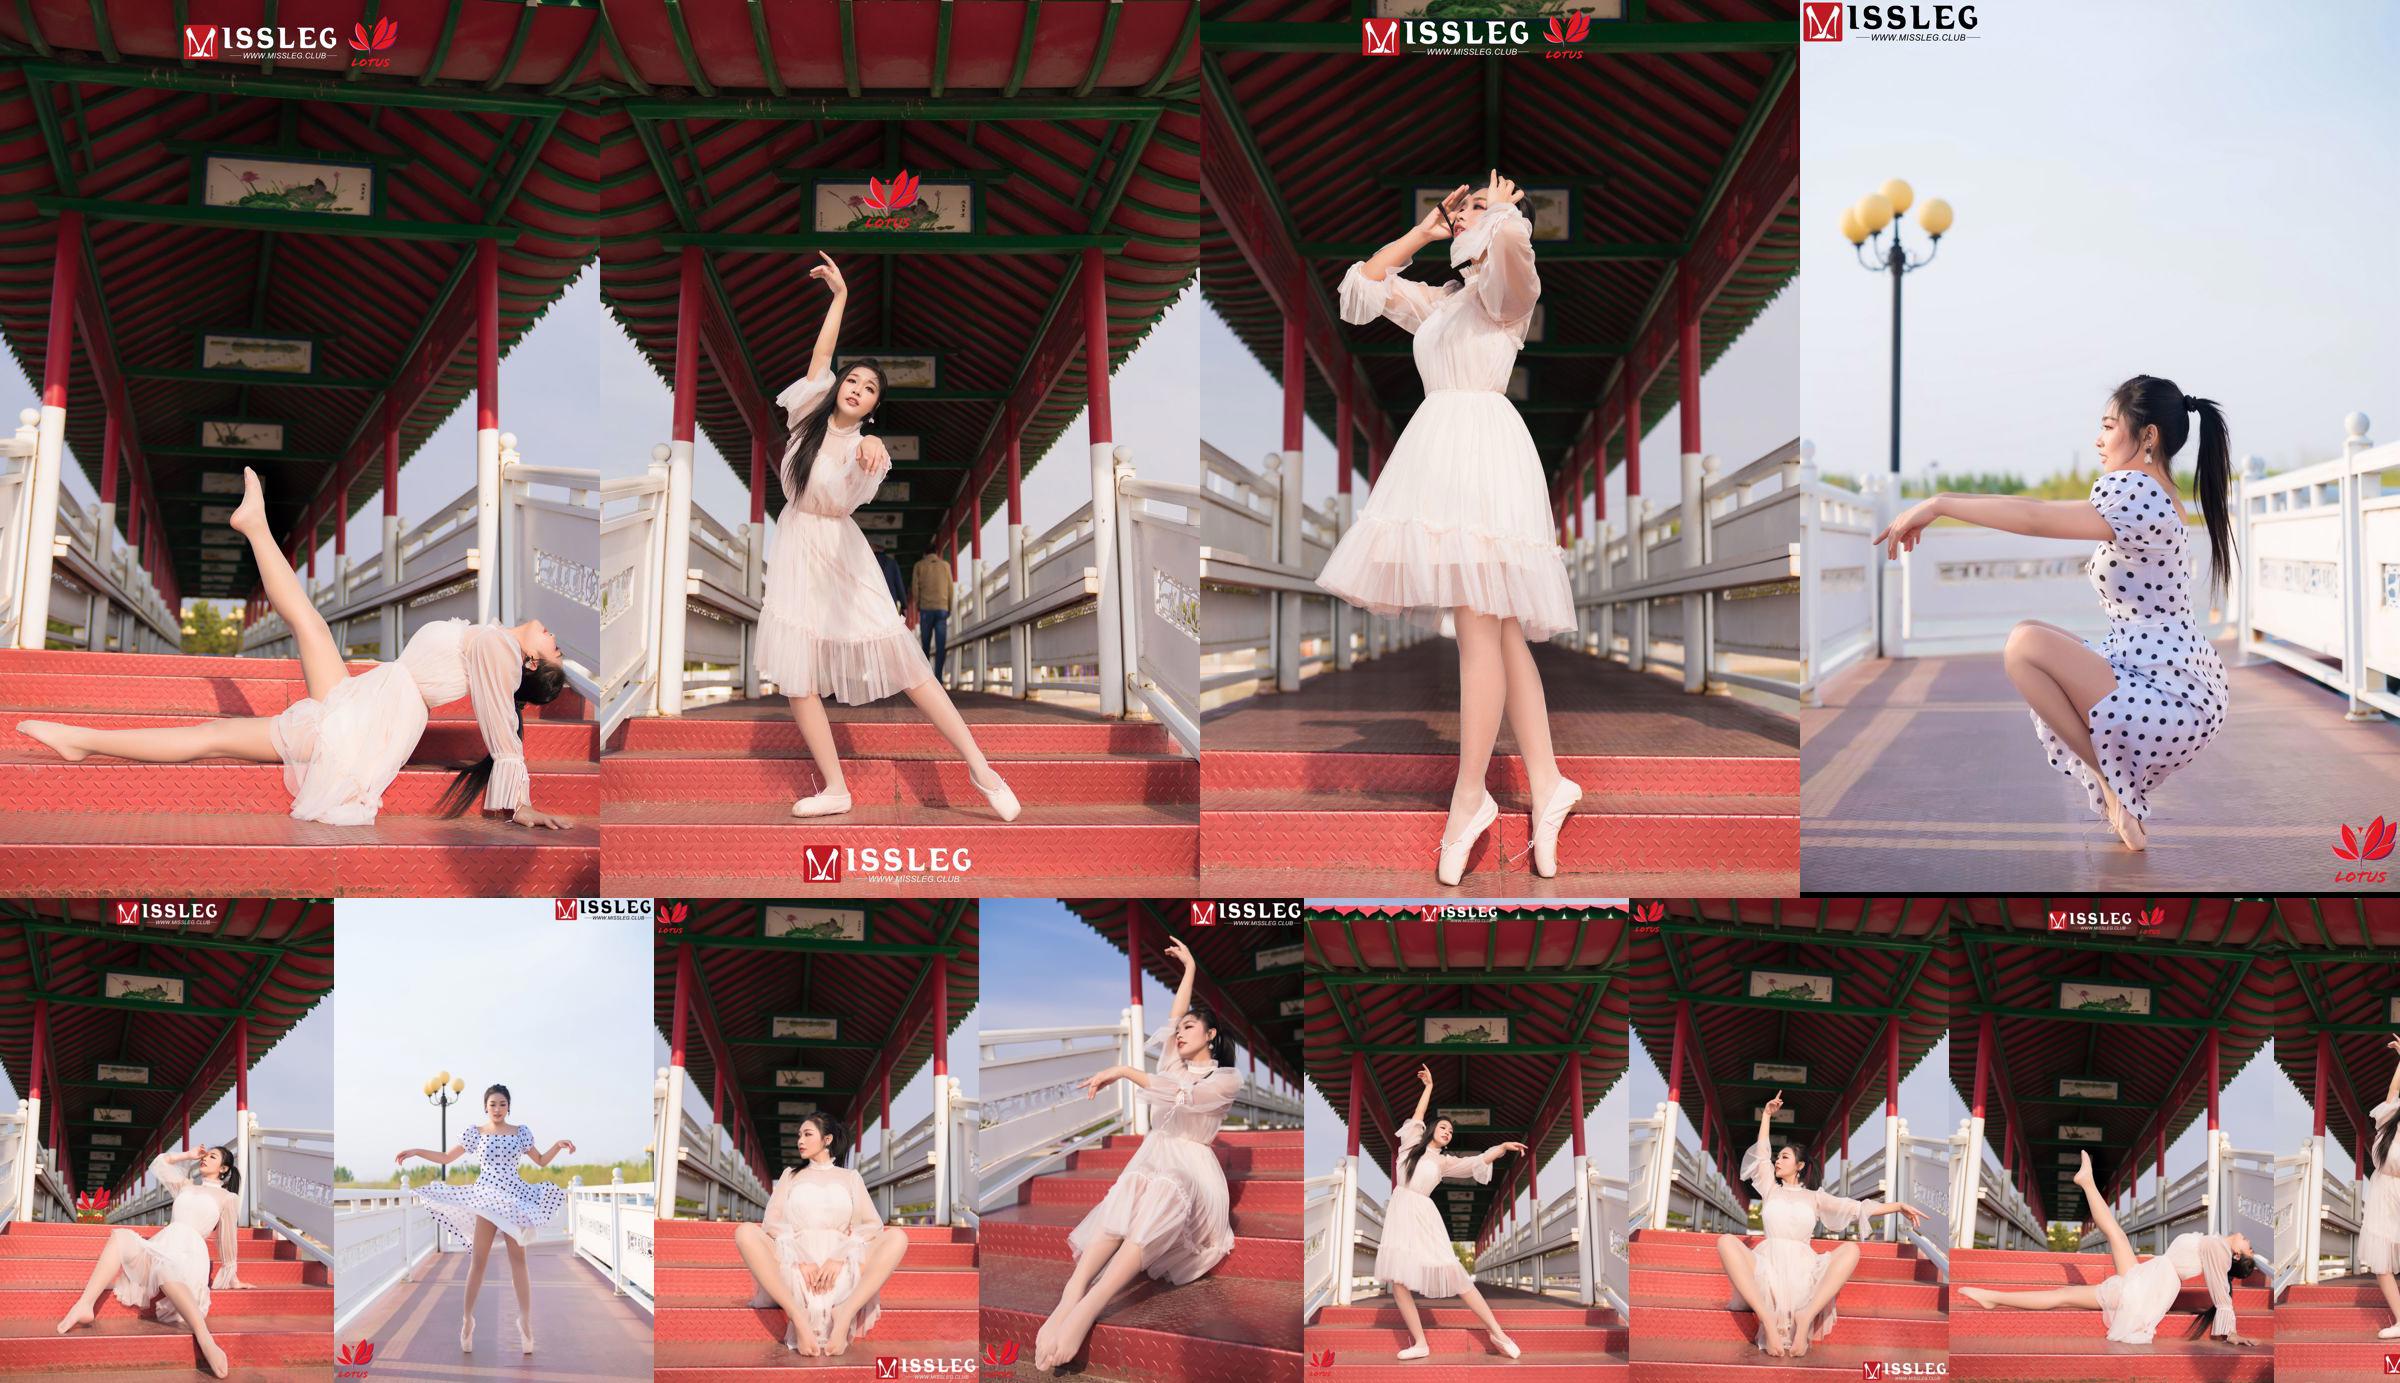 [蜜 丝 MISSLEG] M018 Imp 3 "Scenic Dancer" No.68a593 Page 1